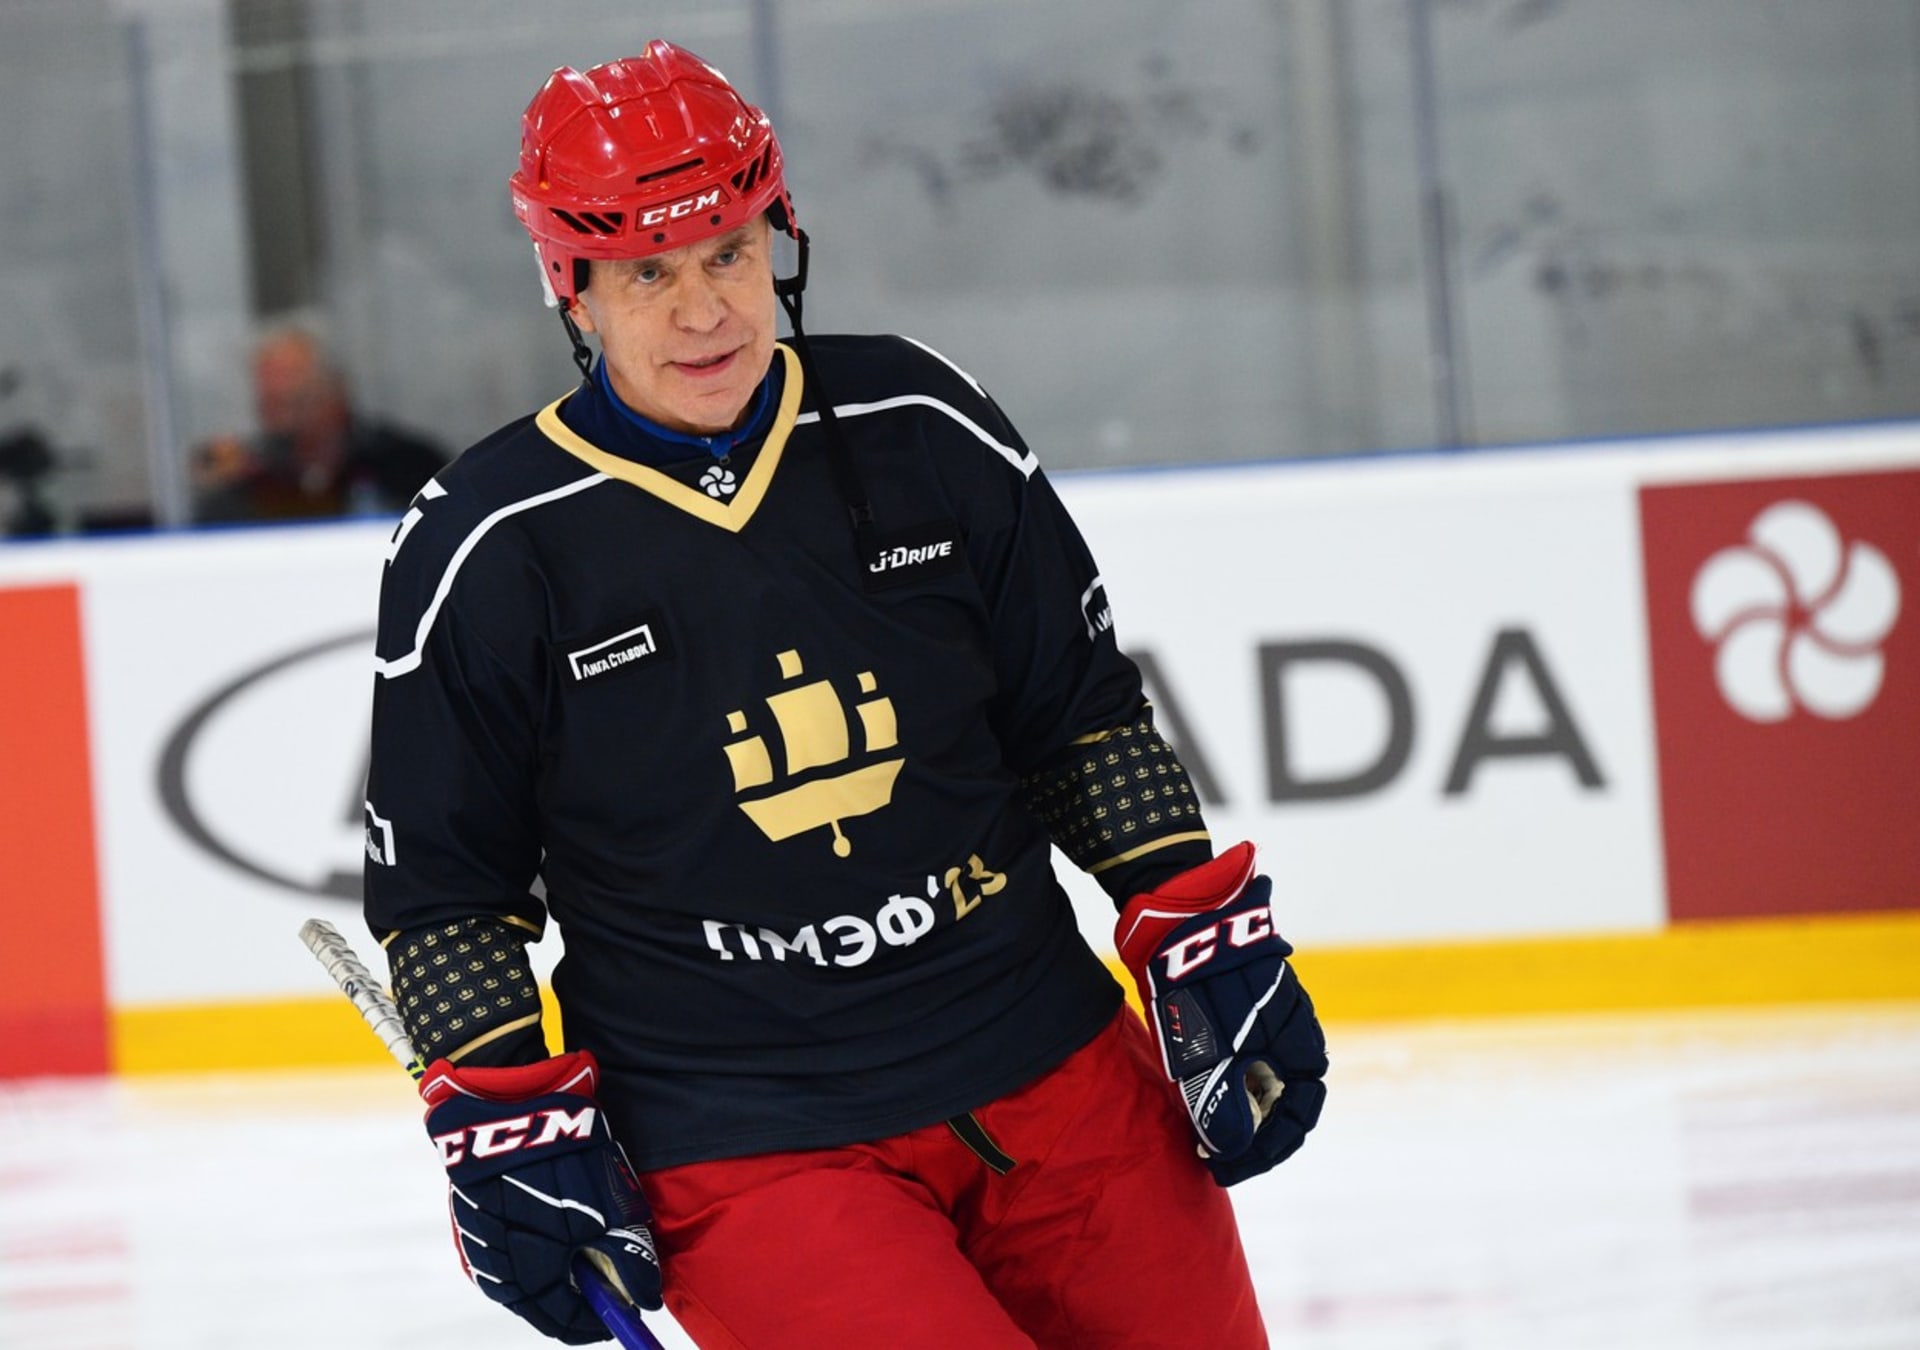 Vjačeslav Fetisov ještě na sebe čas od času hokejovou výstroj obleče.